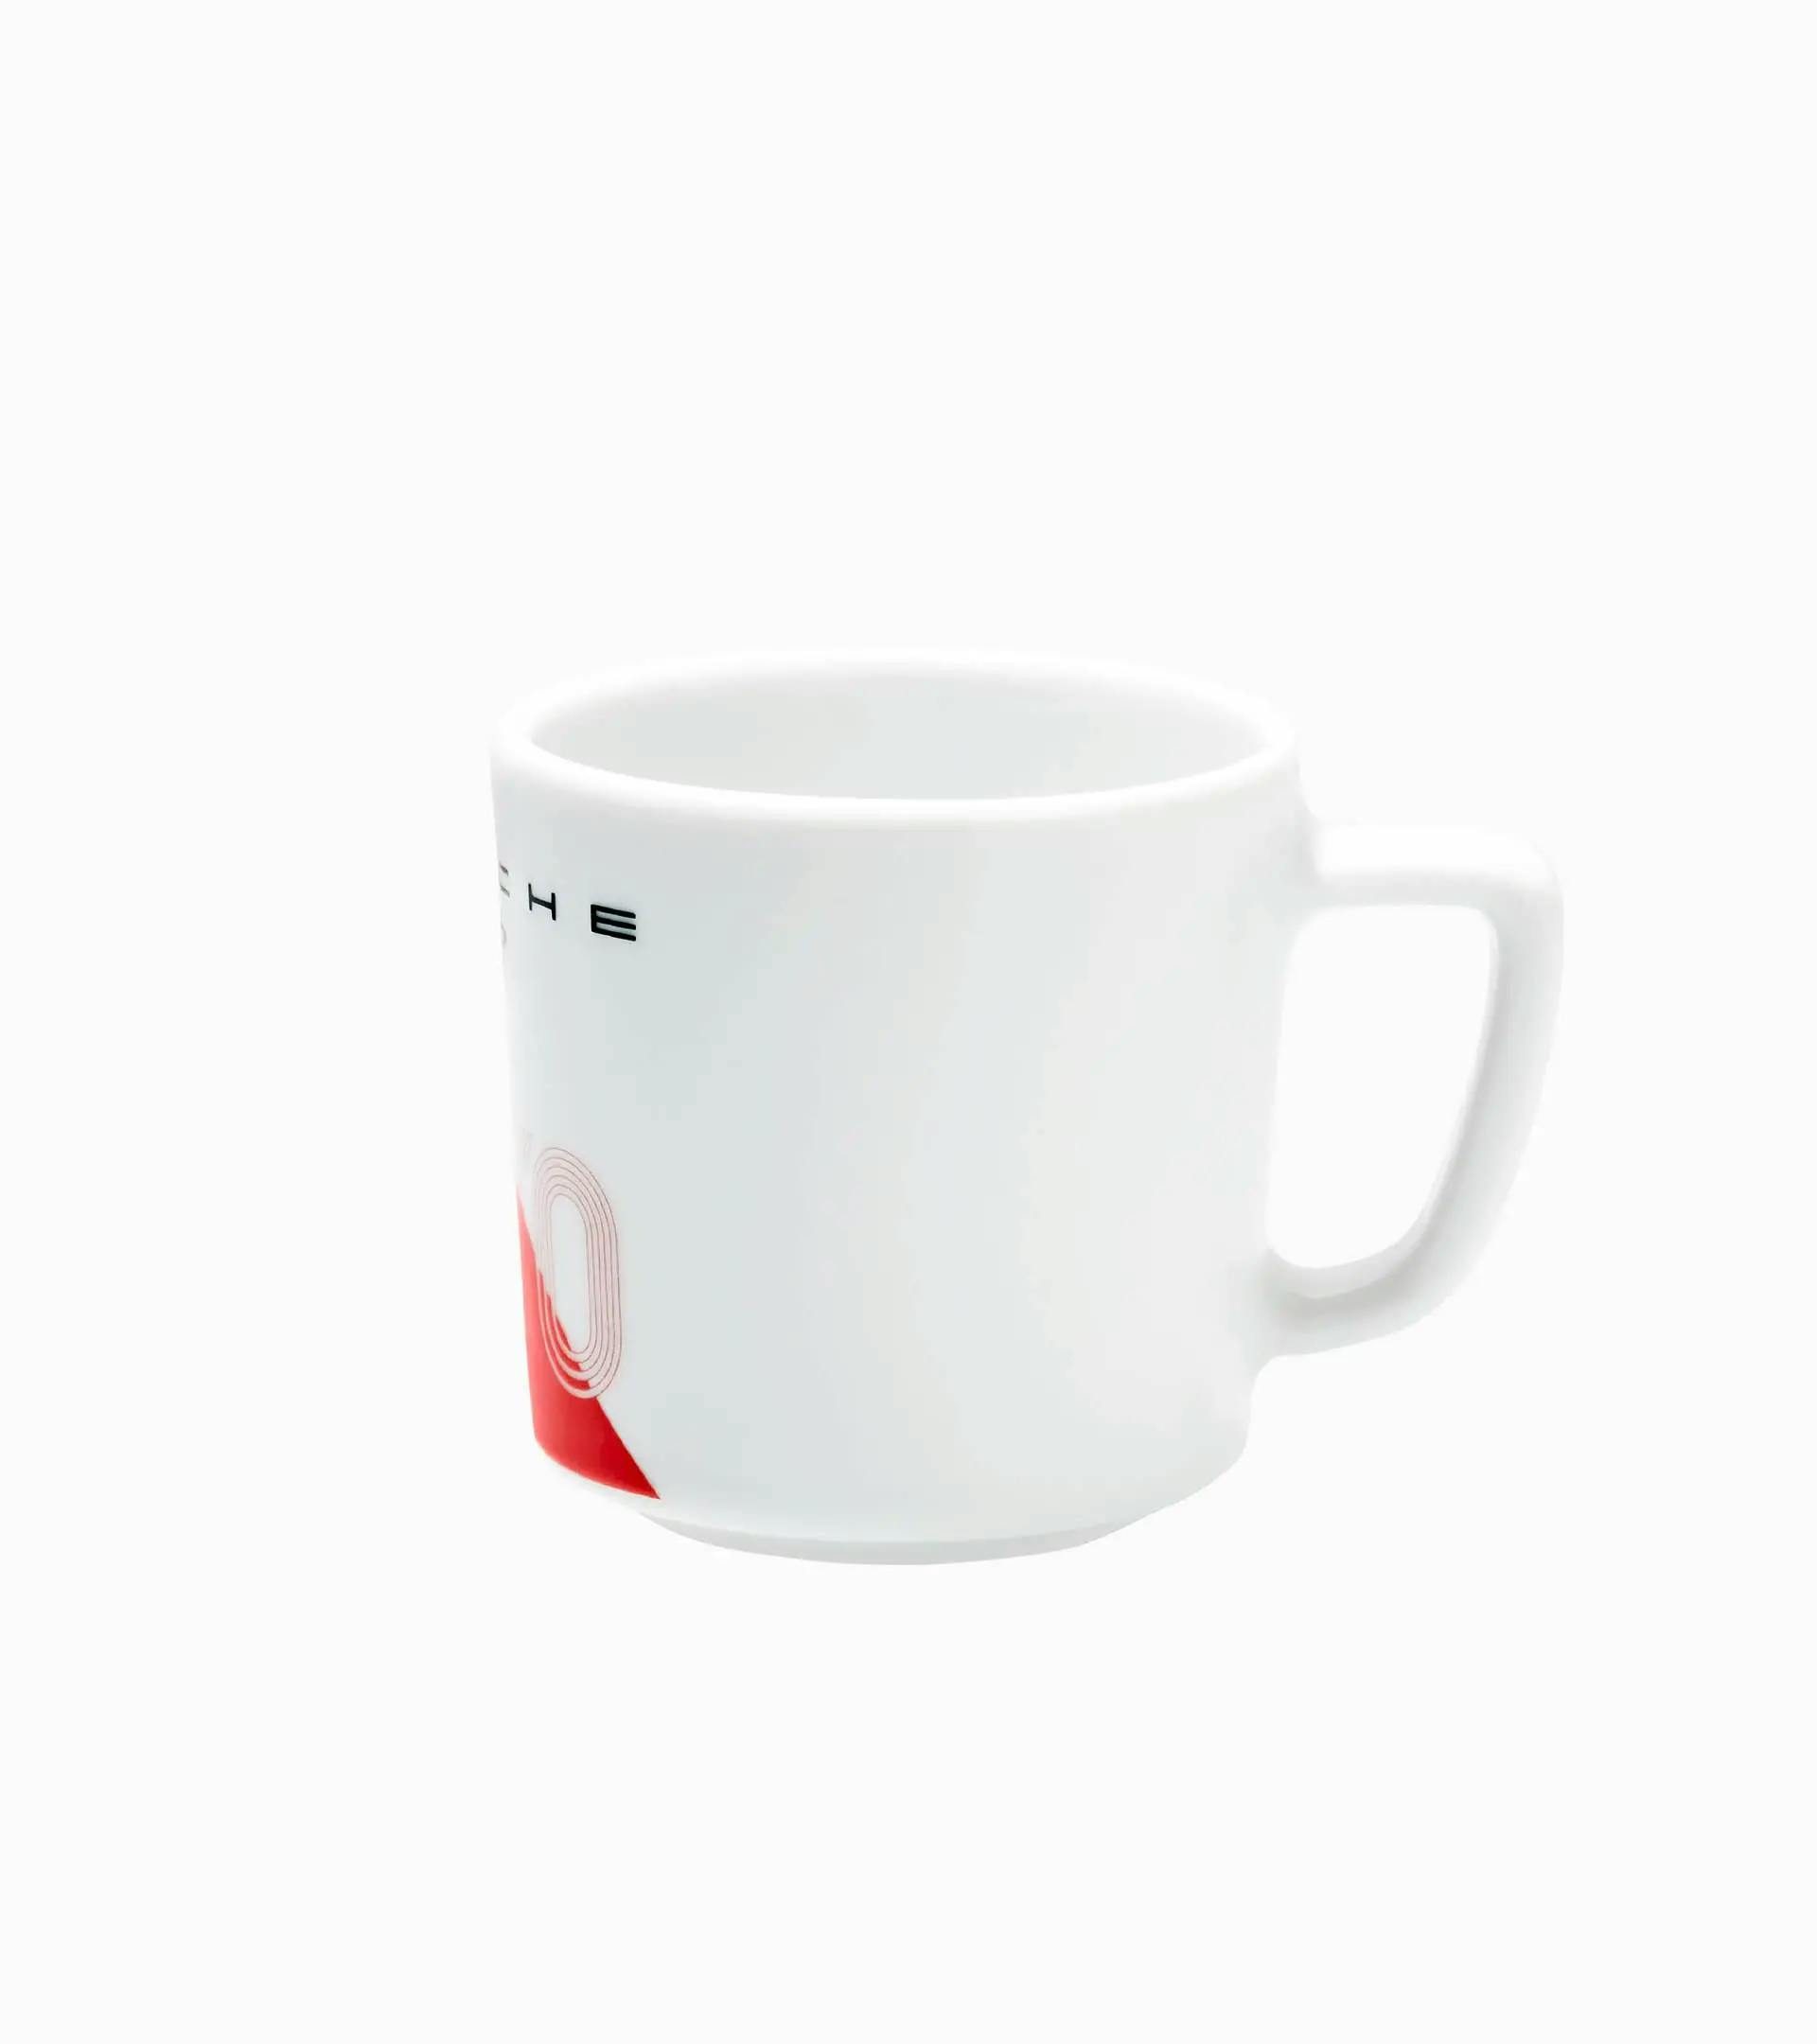 Sammel-Espresso-Cup No. 1 Le Mans 2020 – Ltd. 2